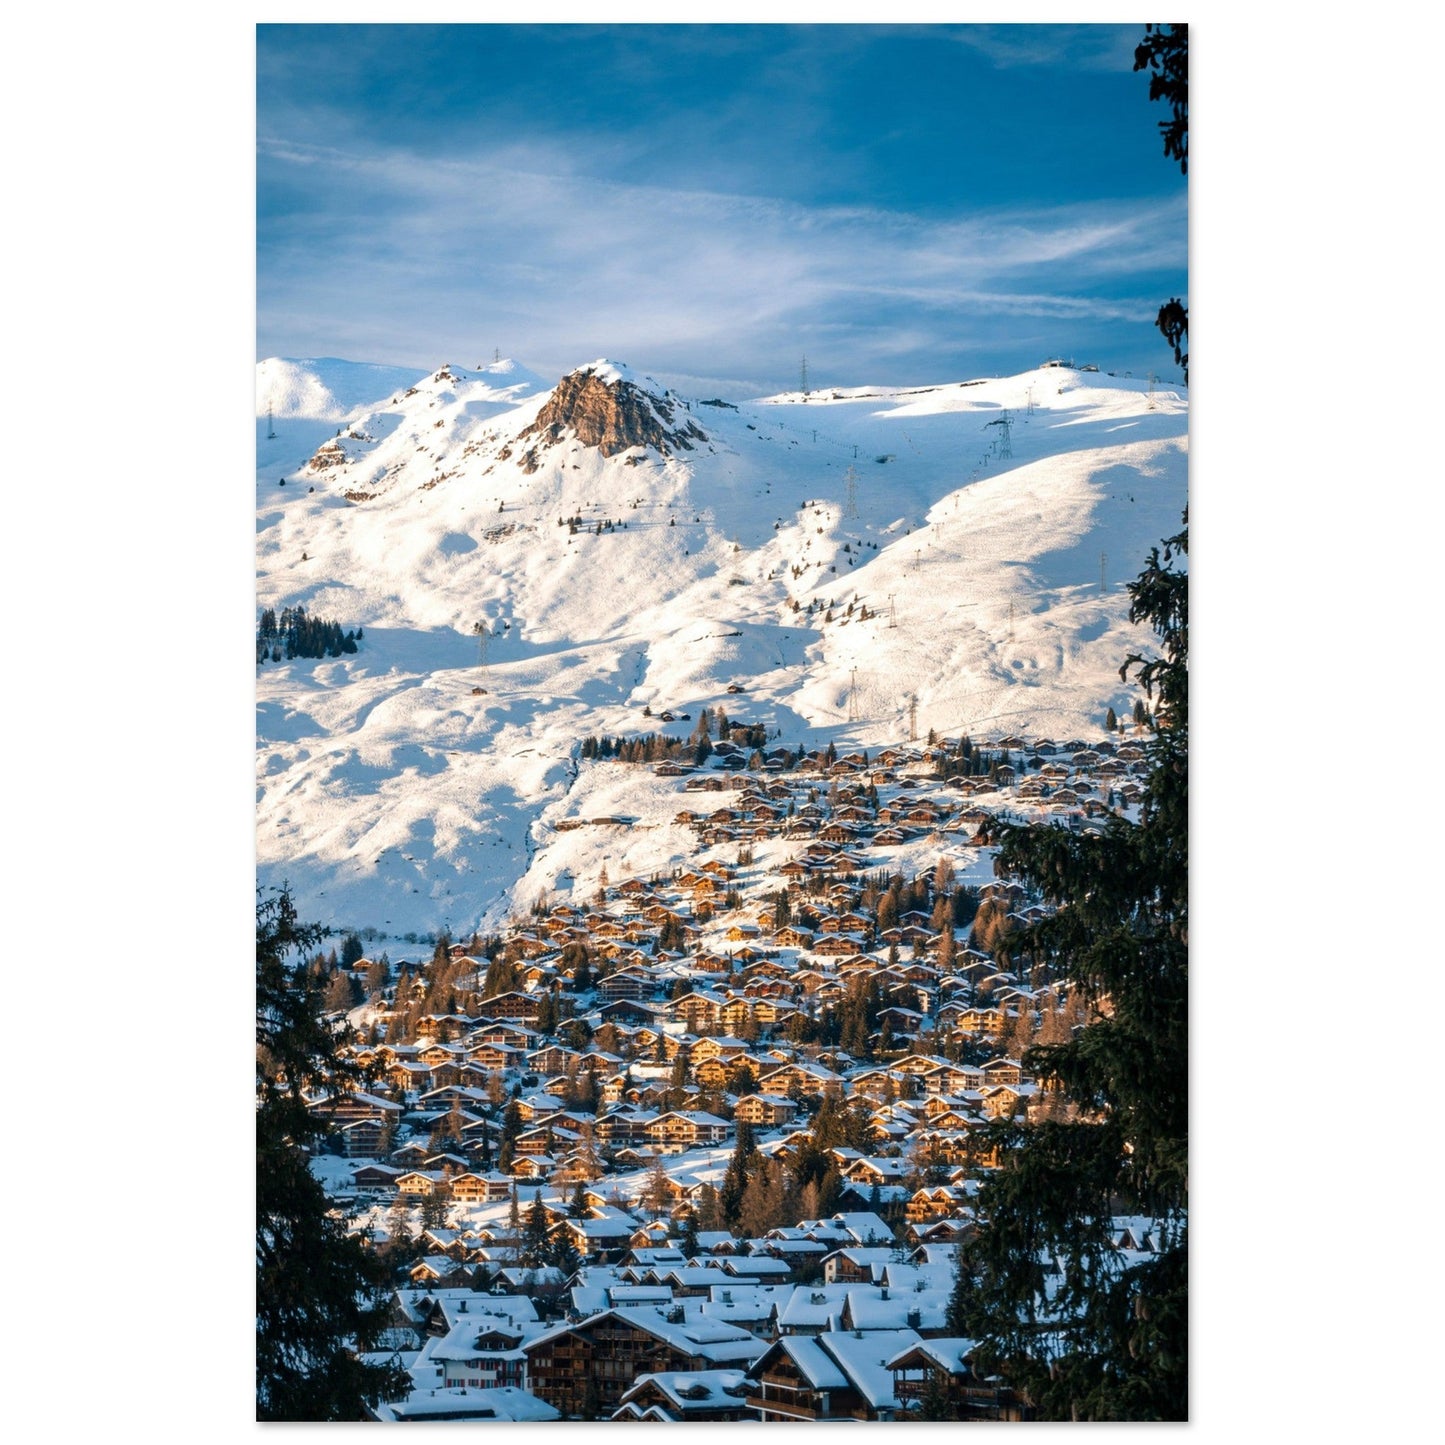 Photo du domaine skiable de Verbier en hiver, Suisse #1 - Tableau photo alu montagne